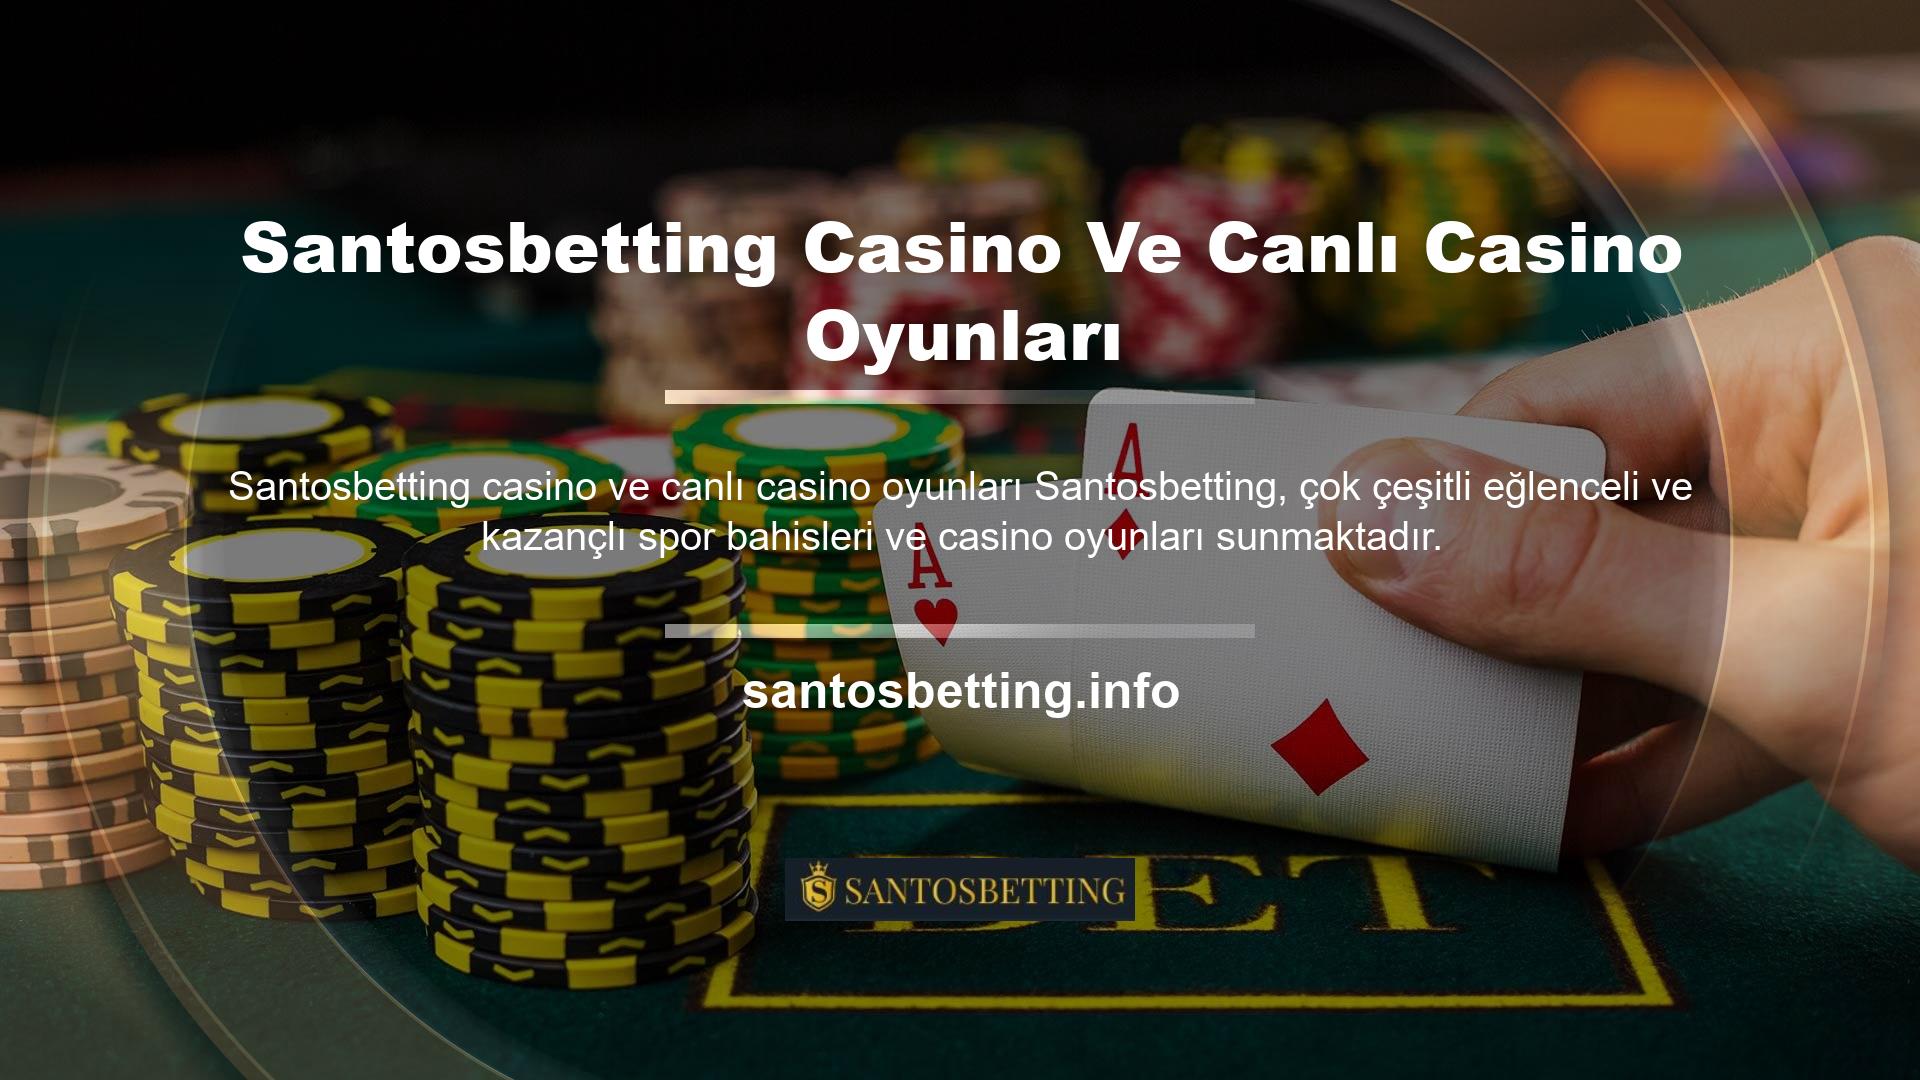 Santosbetting sitesi casino ve canlı casino altyapı ortakları ile oldukça sağlam bir altyapıya sahiptir